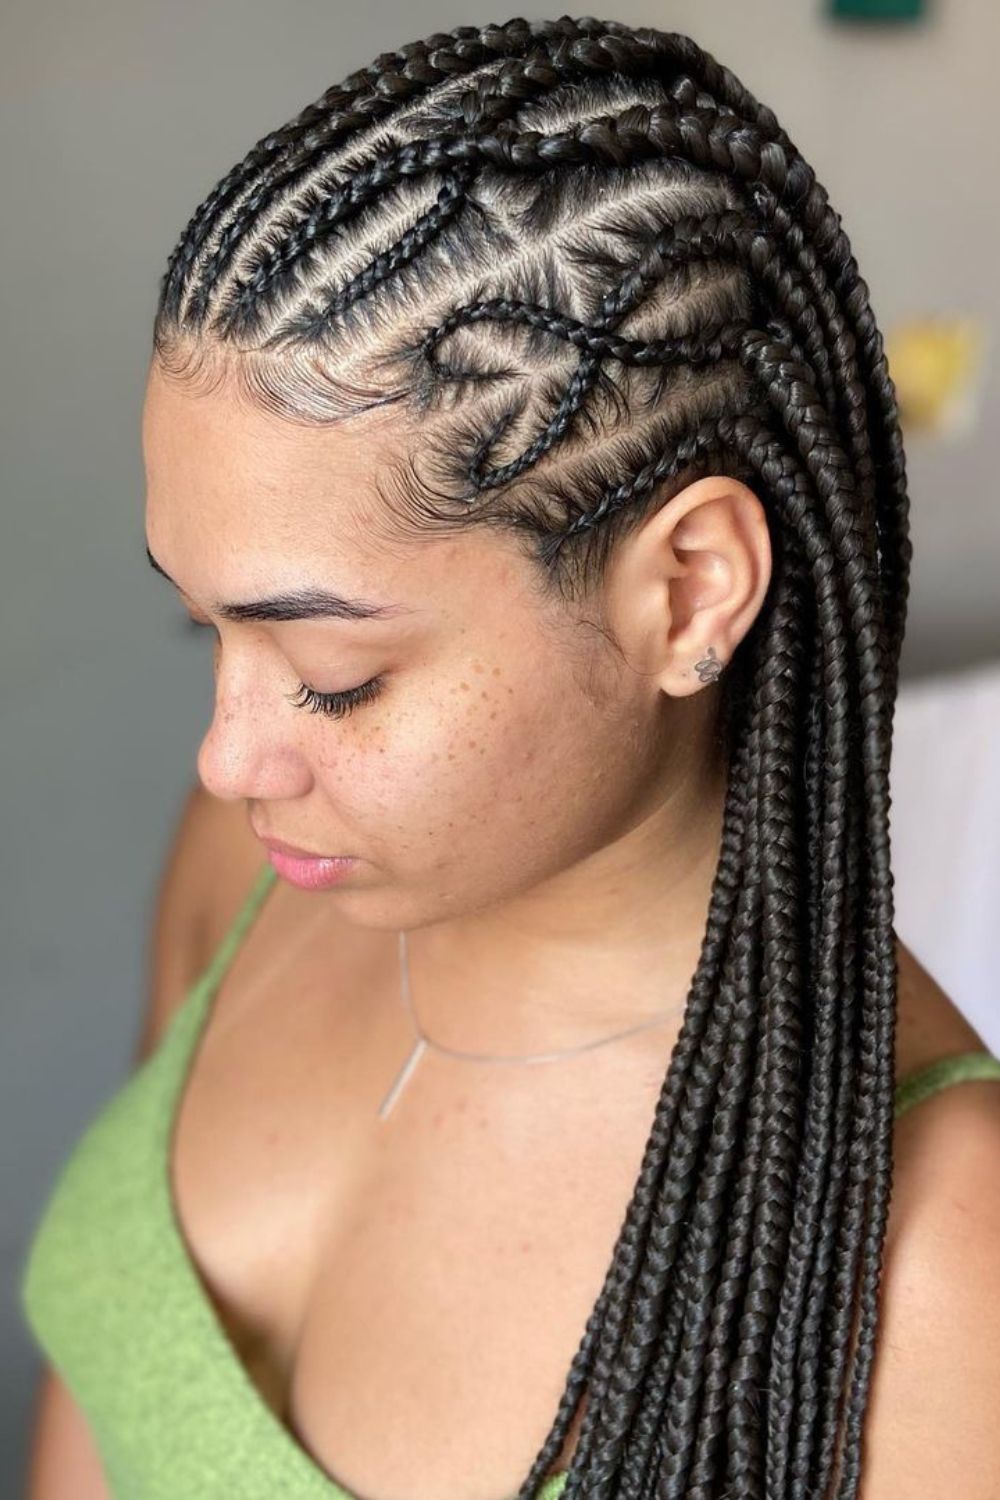 A woman with black Fulani braids.